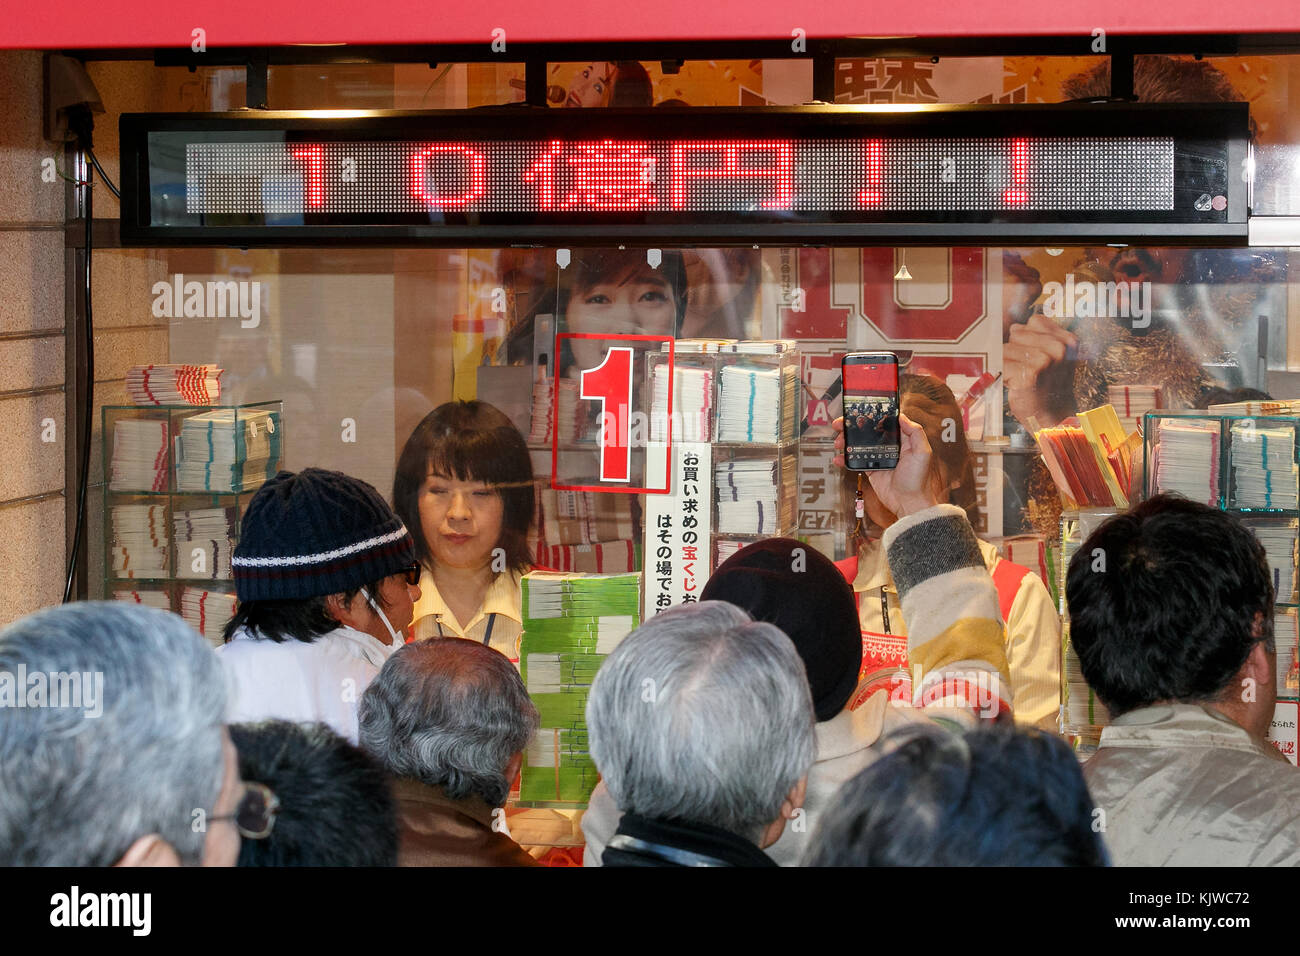 La gente compra billetes de lotería en el primer día de venta para la presentación de fin de año de la lotería jumbo el 27 de noviembre de 2017, Tokio, Japón desde la mañana temprano los compradores hicieron fila para comprar sus boletos de lotería en la primera ventanilla de venta de pasajes en Ginza, que es bien conocida por producir grandes ganadores. Este año, el premio es de 1 mil millones de yenes (unos US$ 8,9 millones) y cada billete cuesta 300 yenes (US$2,69). Venta de entradas continuará en todo el país hasta el 22 de diciembre. Crédito: Rodrigo reyes marin/aflo/alamy live news Foto de stock